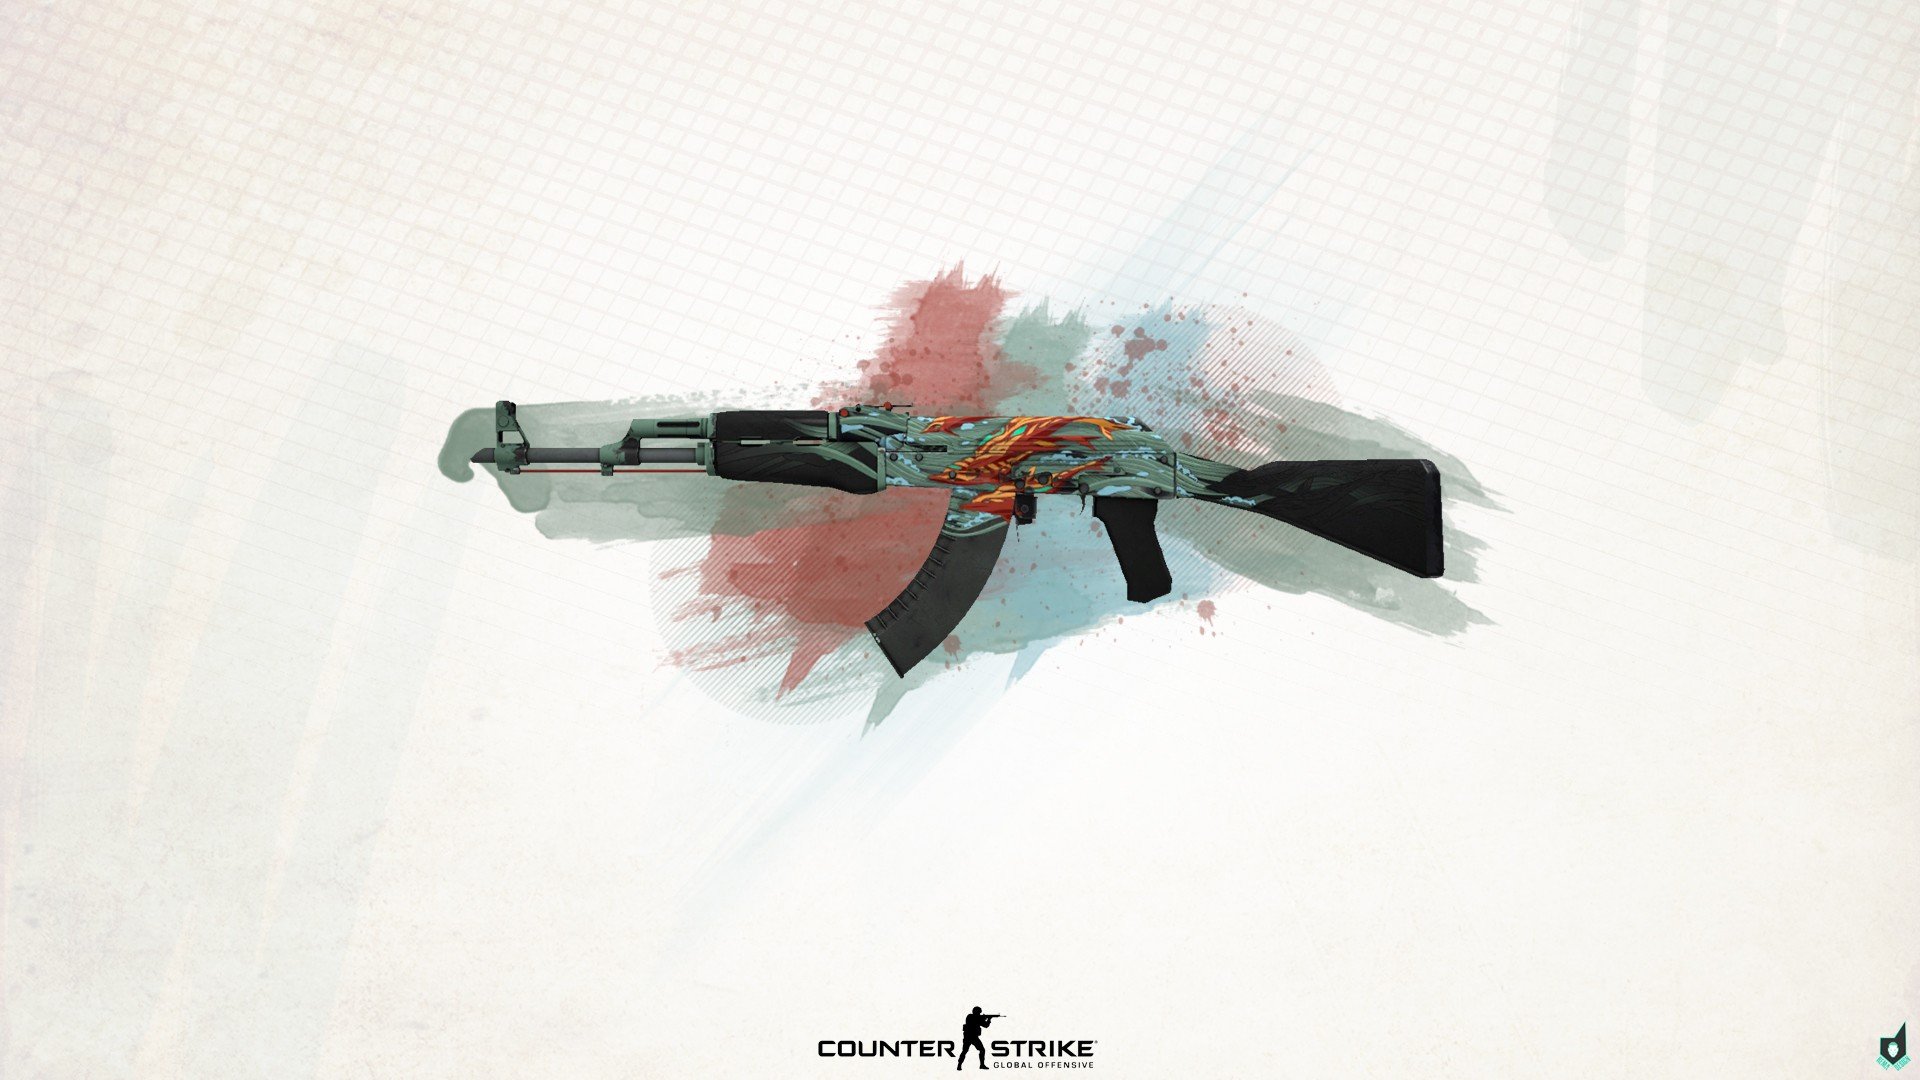 Counter Strike: Global Offensive, Counter Strike, Assault rifle, AKM Wallpaper